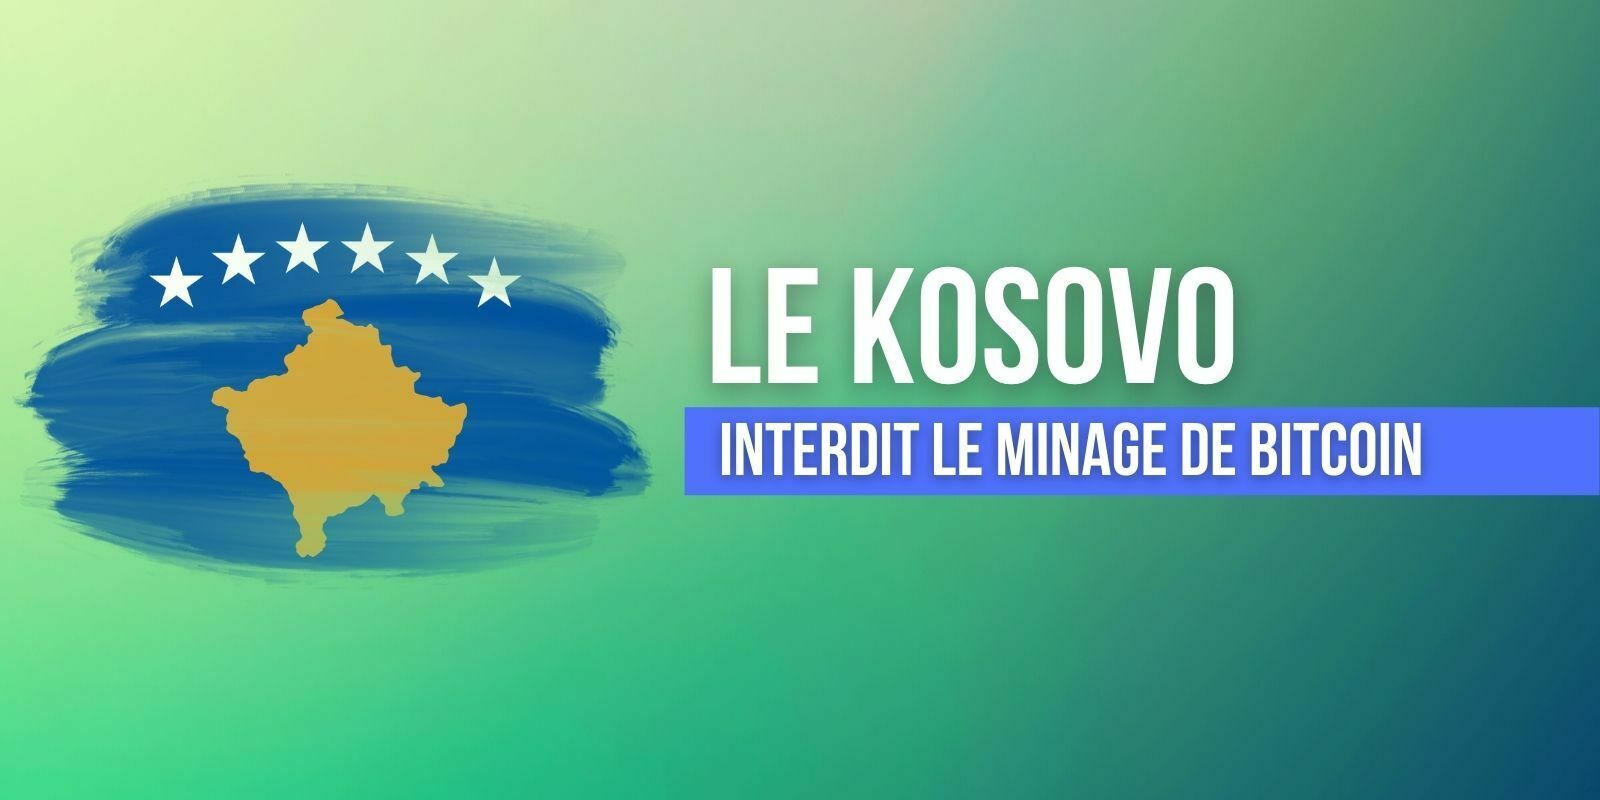 Le Kosovo interdit le minage de Bitcoin (BTC)